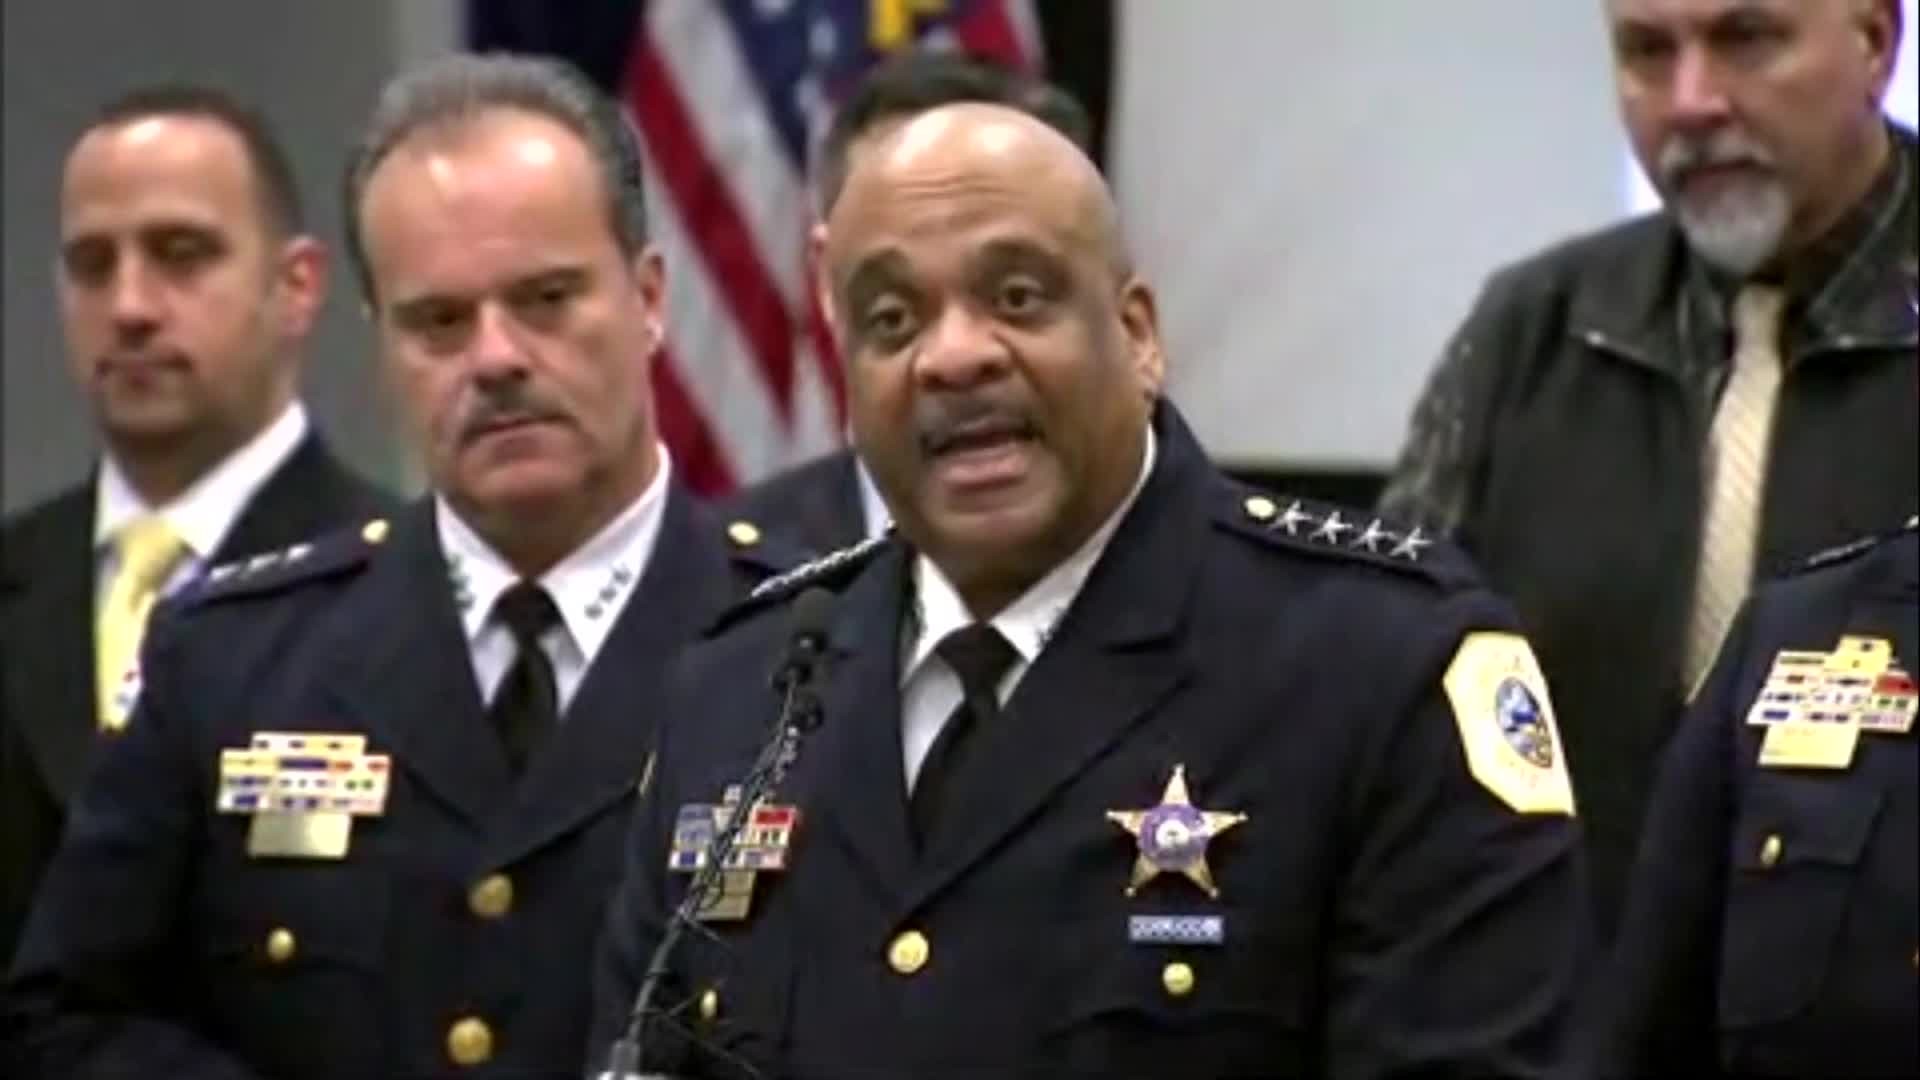 Chicago police superintendent blasts Smollett over alleged attack